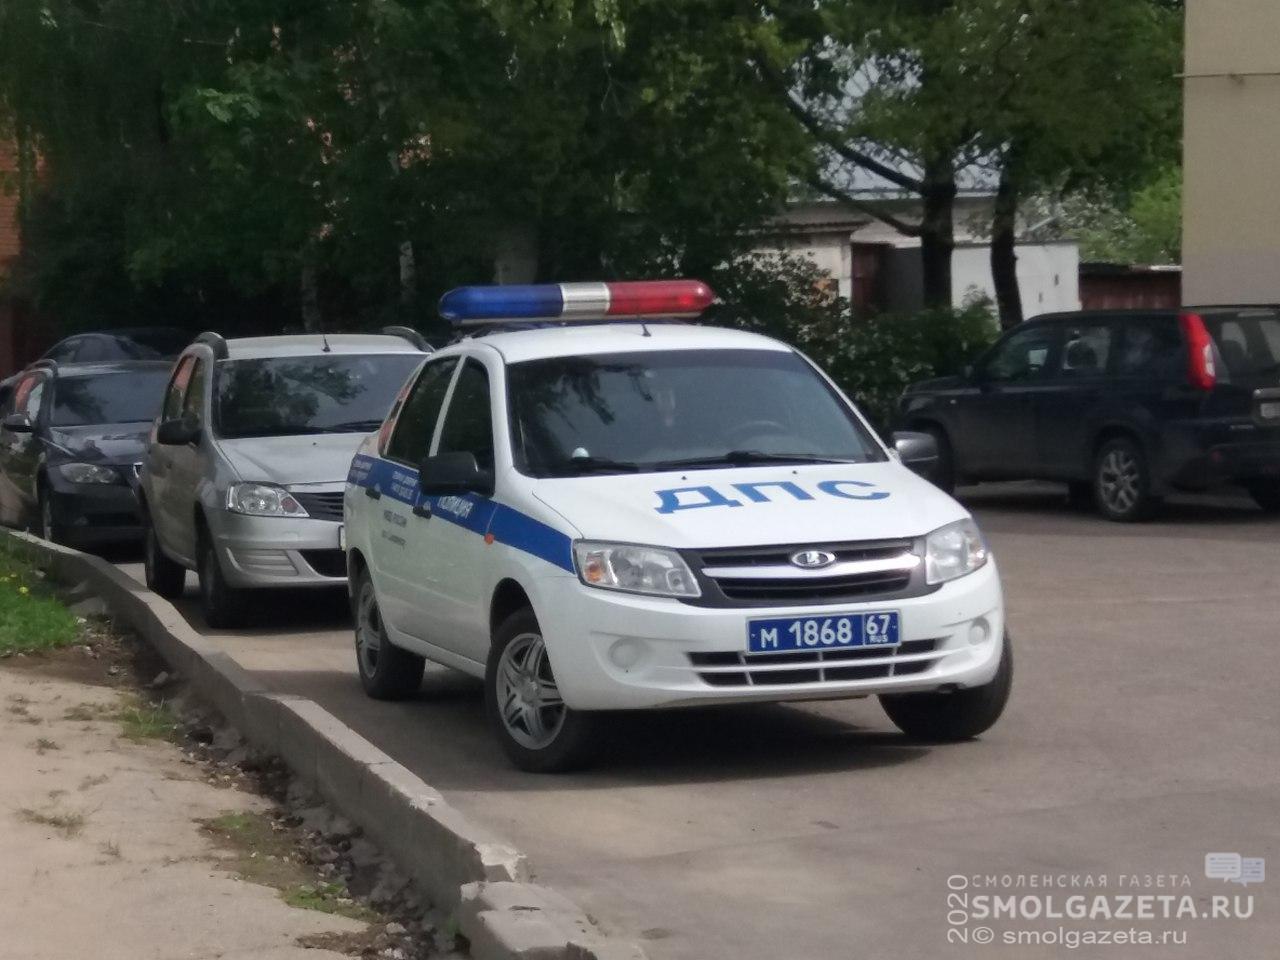 467 административных правонарушений выявили за выходные на дорогах Смоленщины